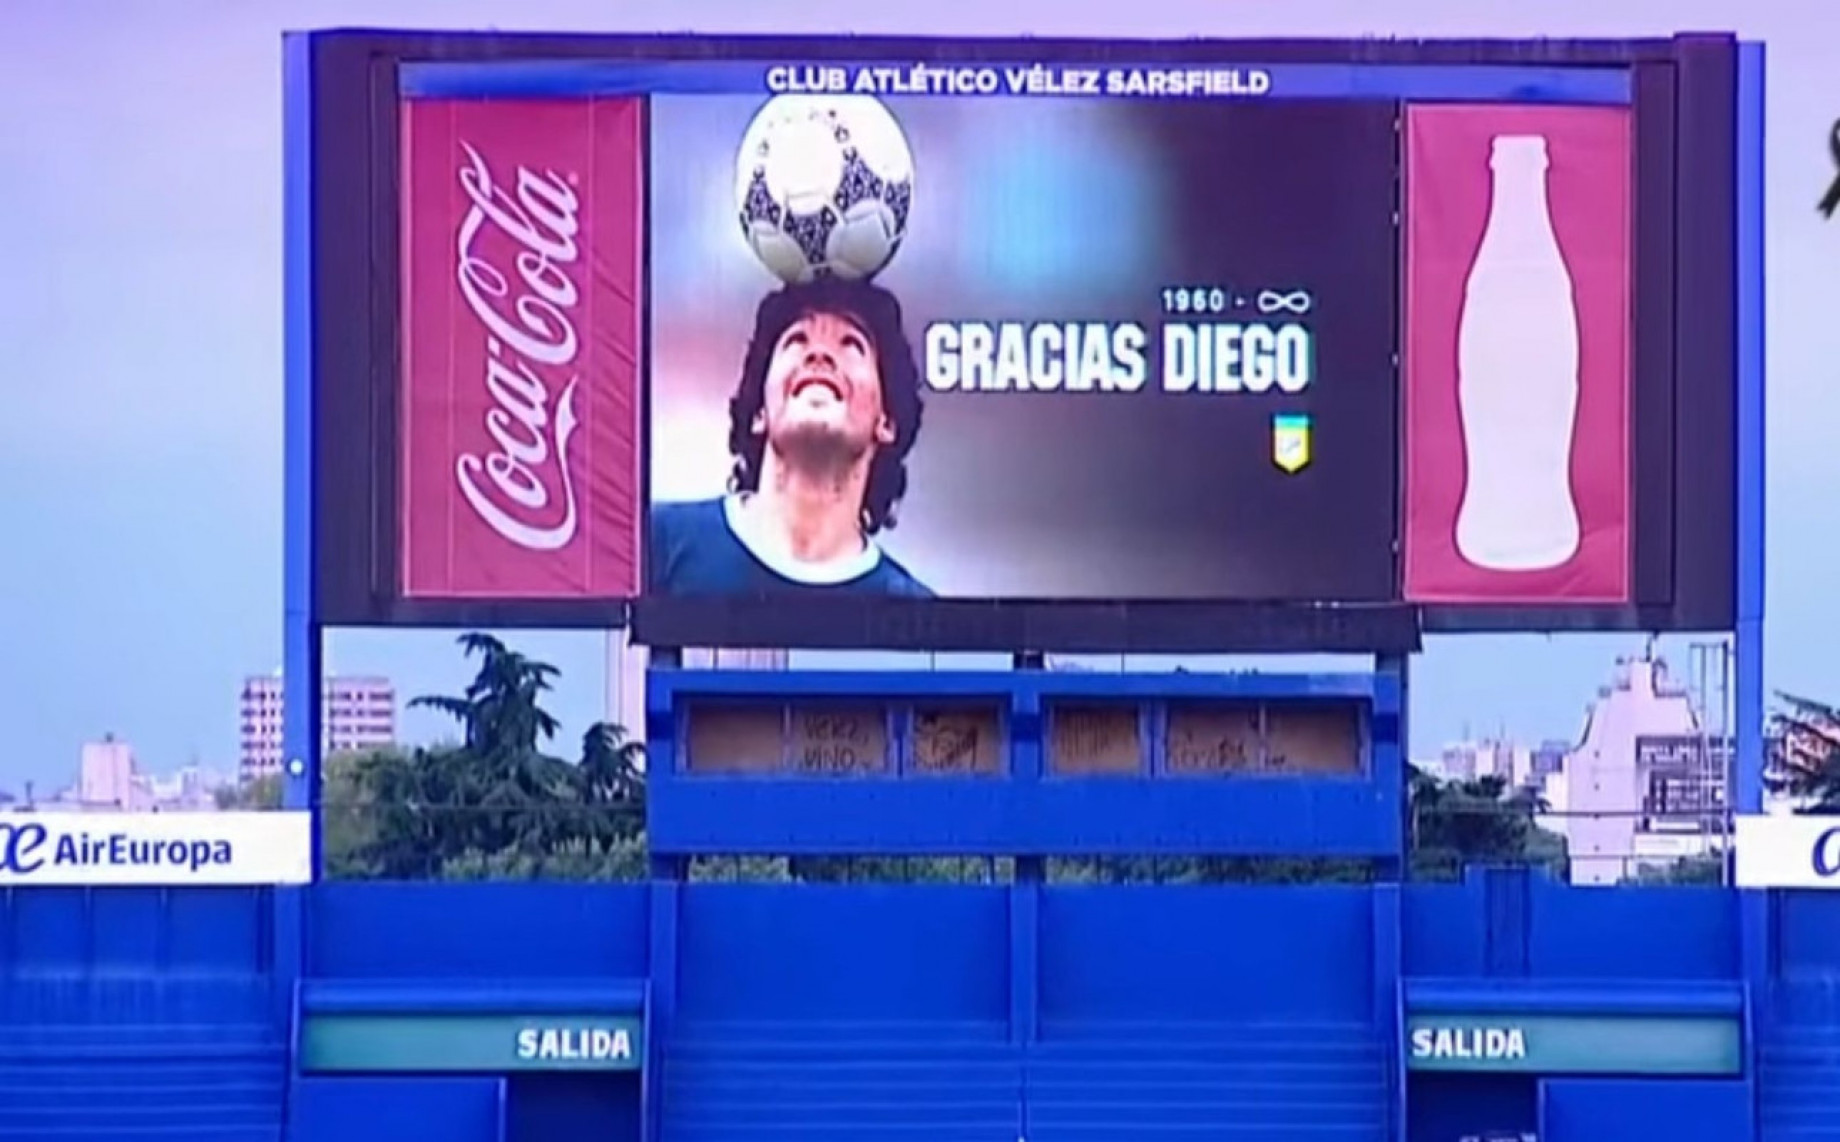 maradona-screen-gpo.jpg